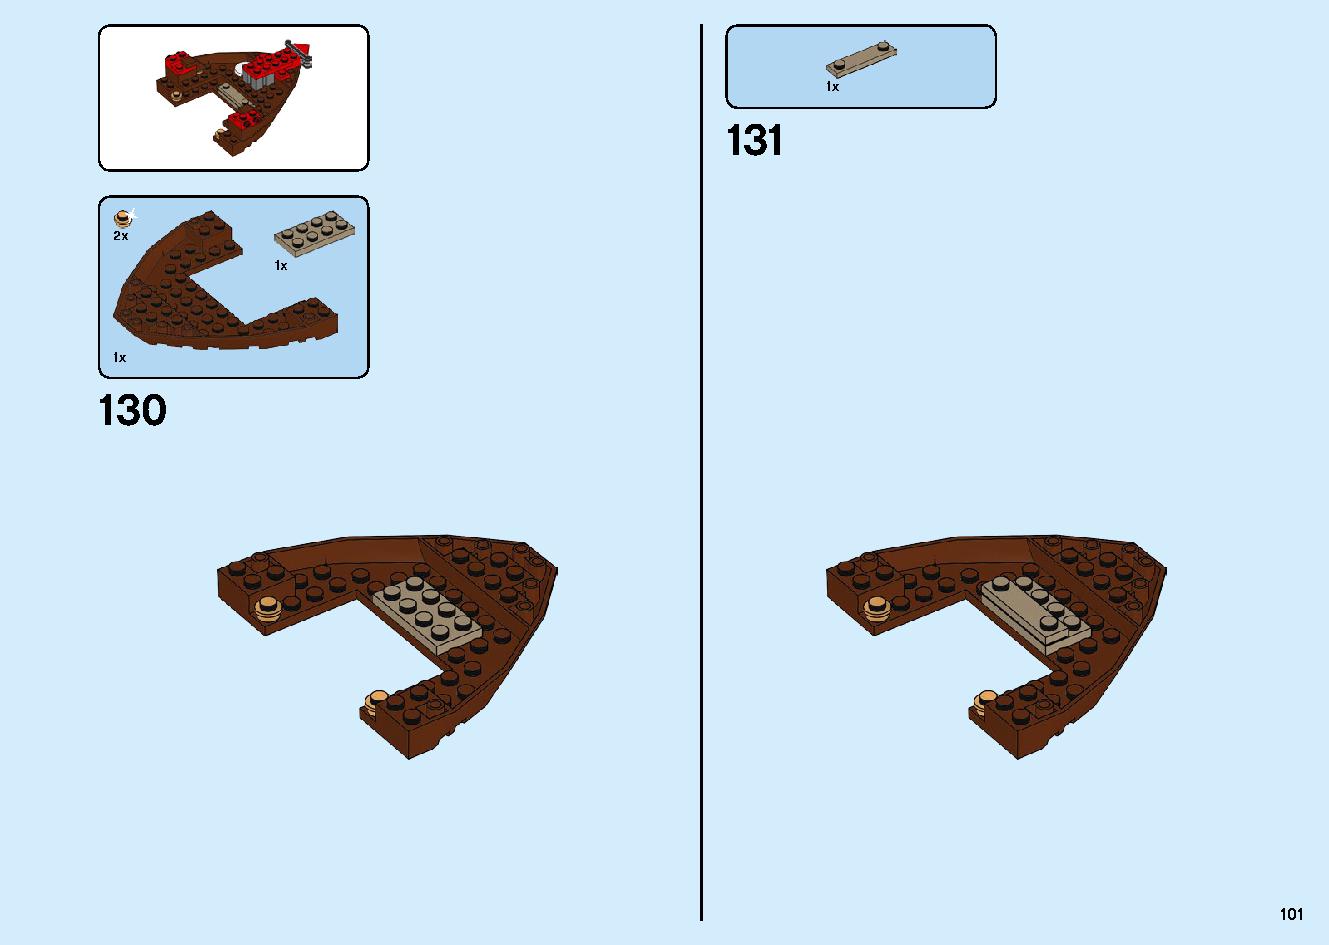 陸上戦艦バウンティ号 70677 レゴの商品情報 レゴの説明書・組立方法 101 page